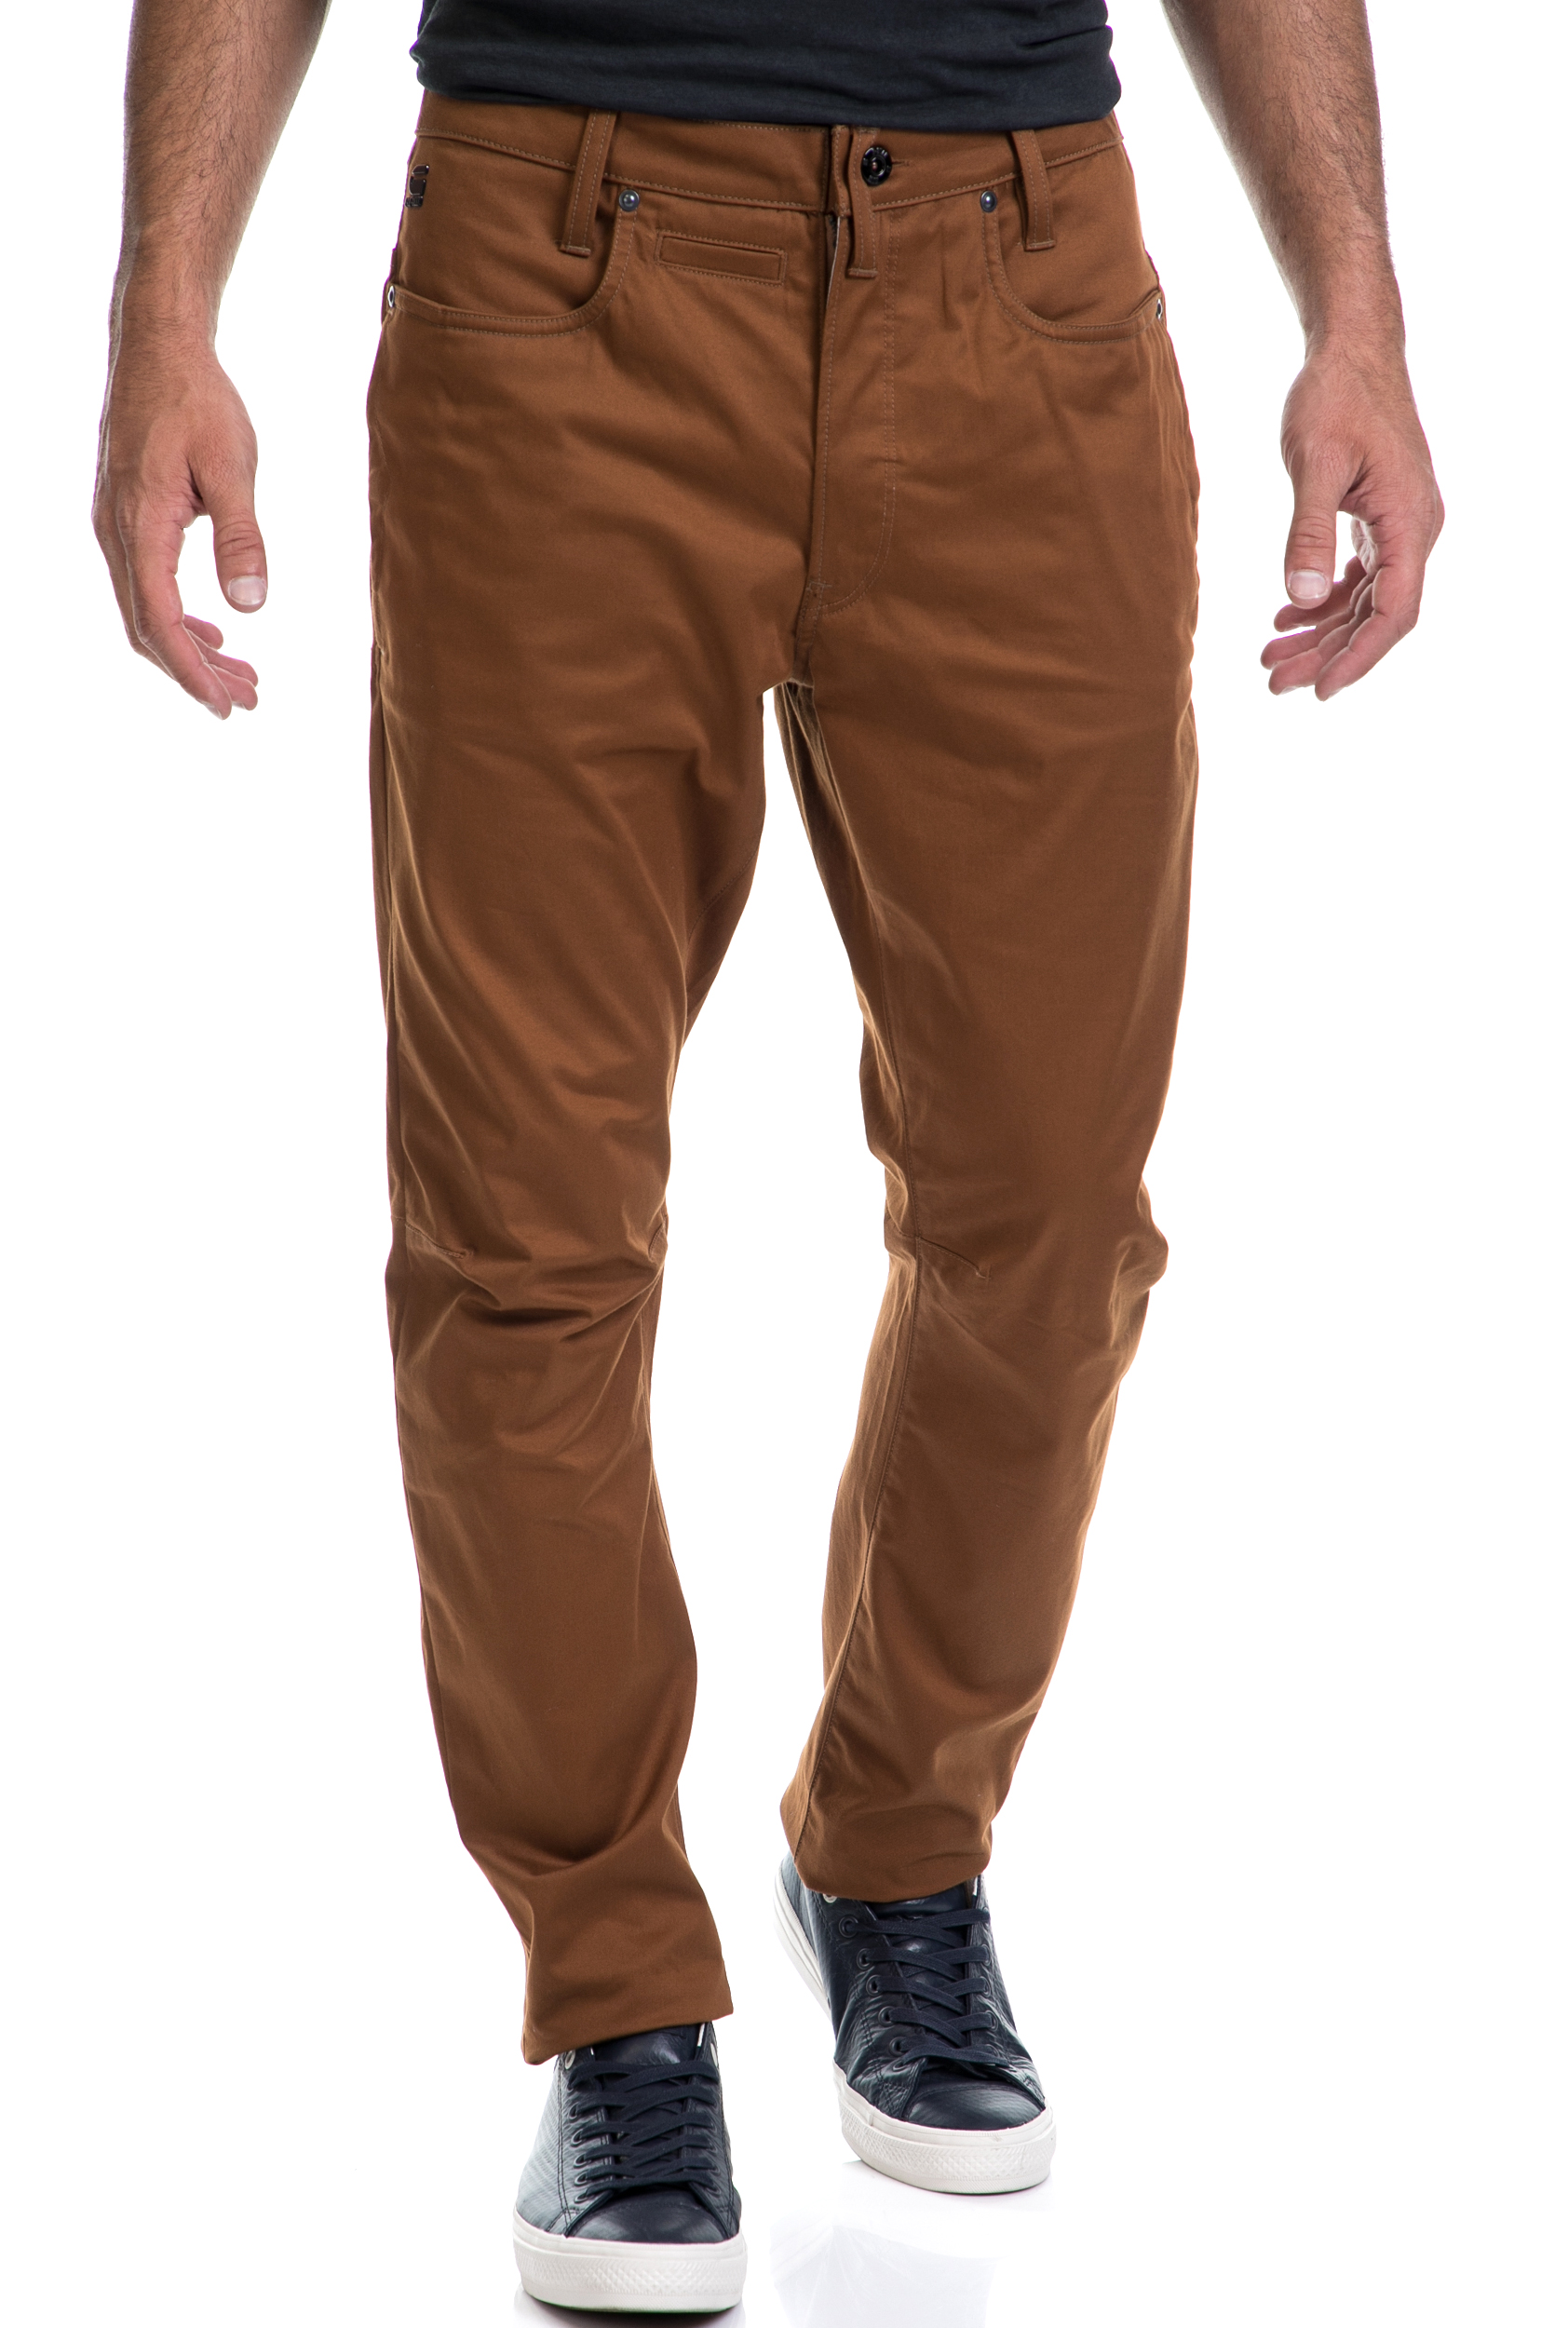 Ανδρικά/Ρούχα/Παντελόνια/Ισια Γραμμή G-STAR RAW - Ανδρικό παντελόνι D-Staq 3D Tapered G-STAR RAW καφέ